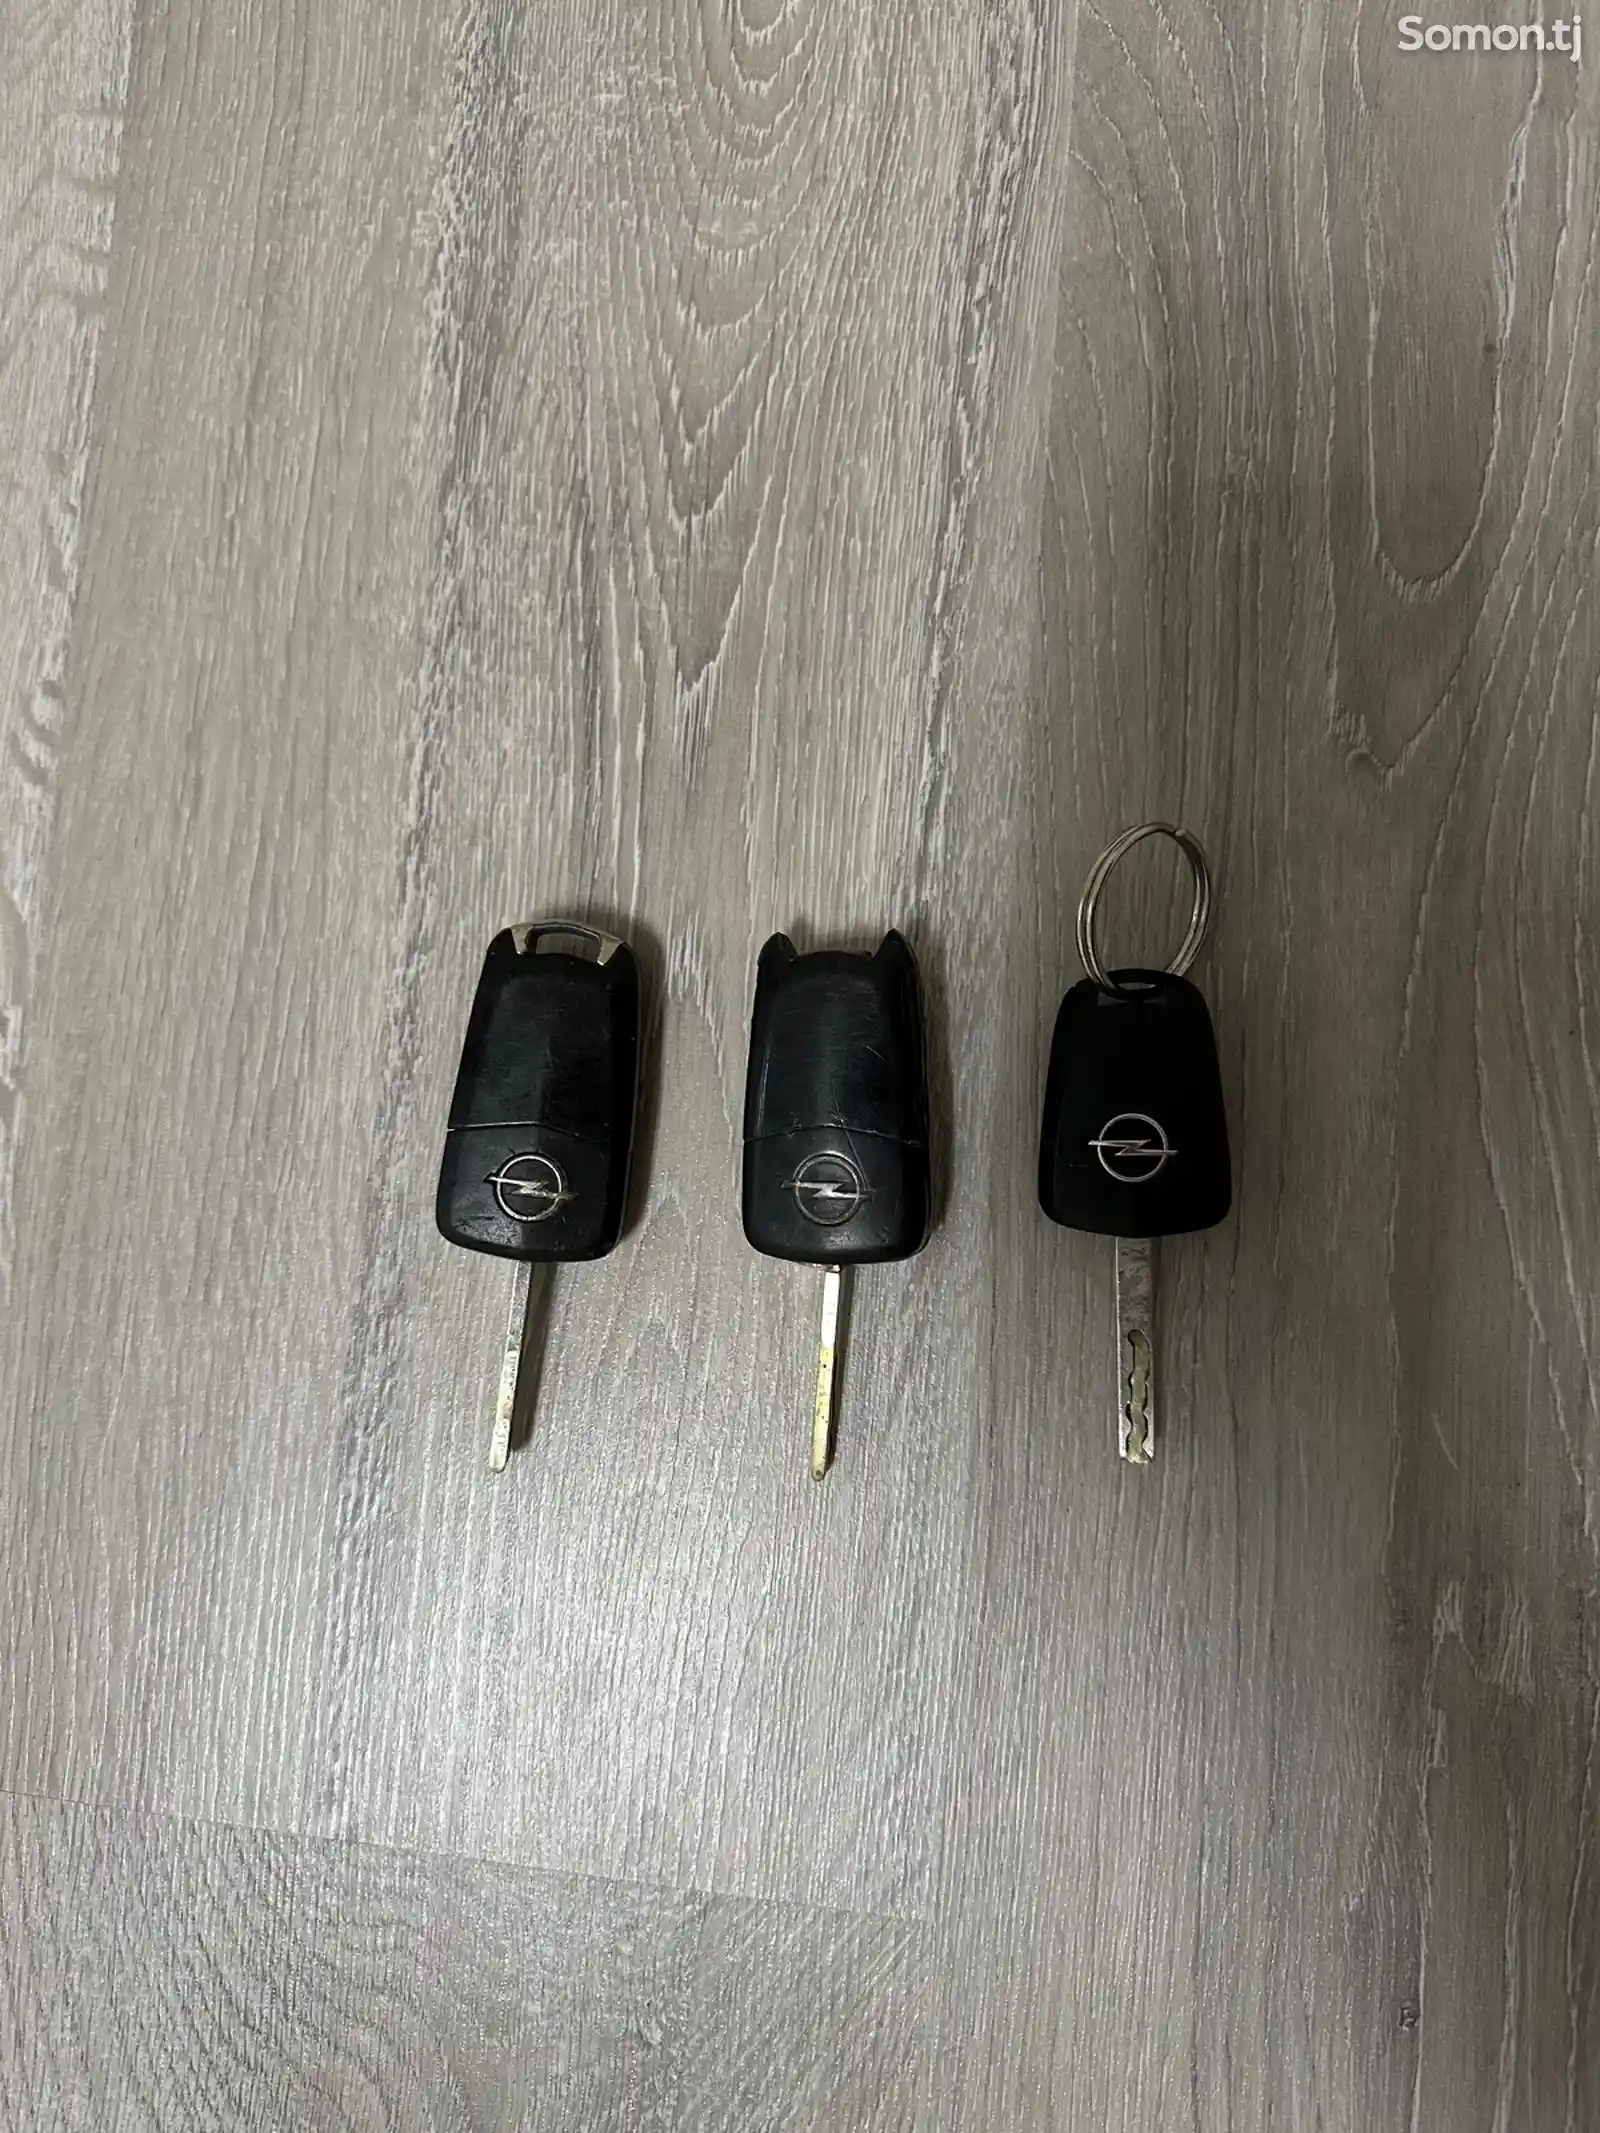 Ключи от Opel Zafira B-2